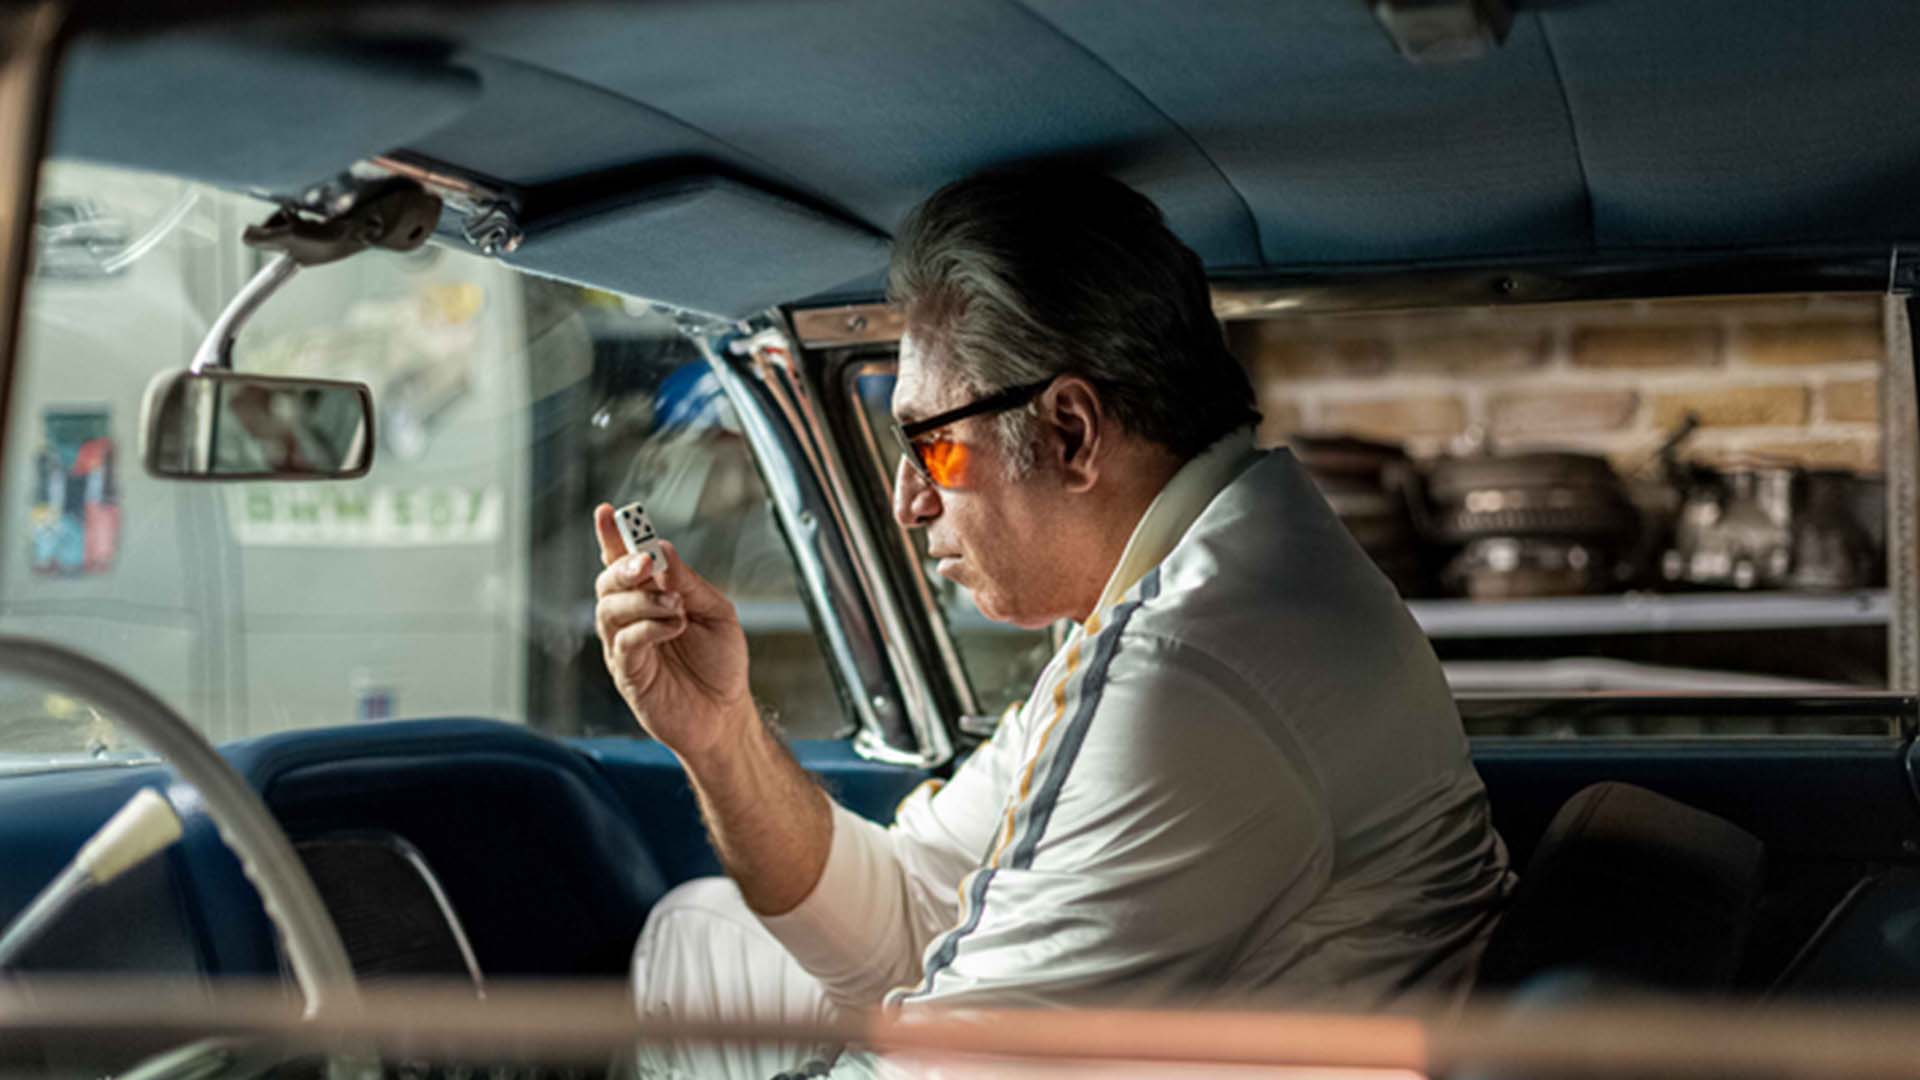 حمید فرخ نژاد در نقش پاپ نشسته در ماشین در سریال میدان سرخ